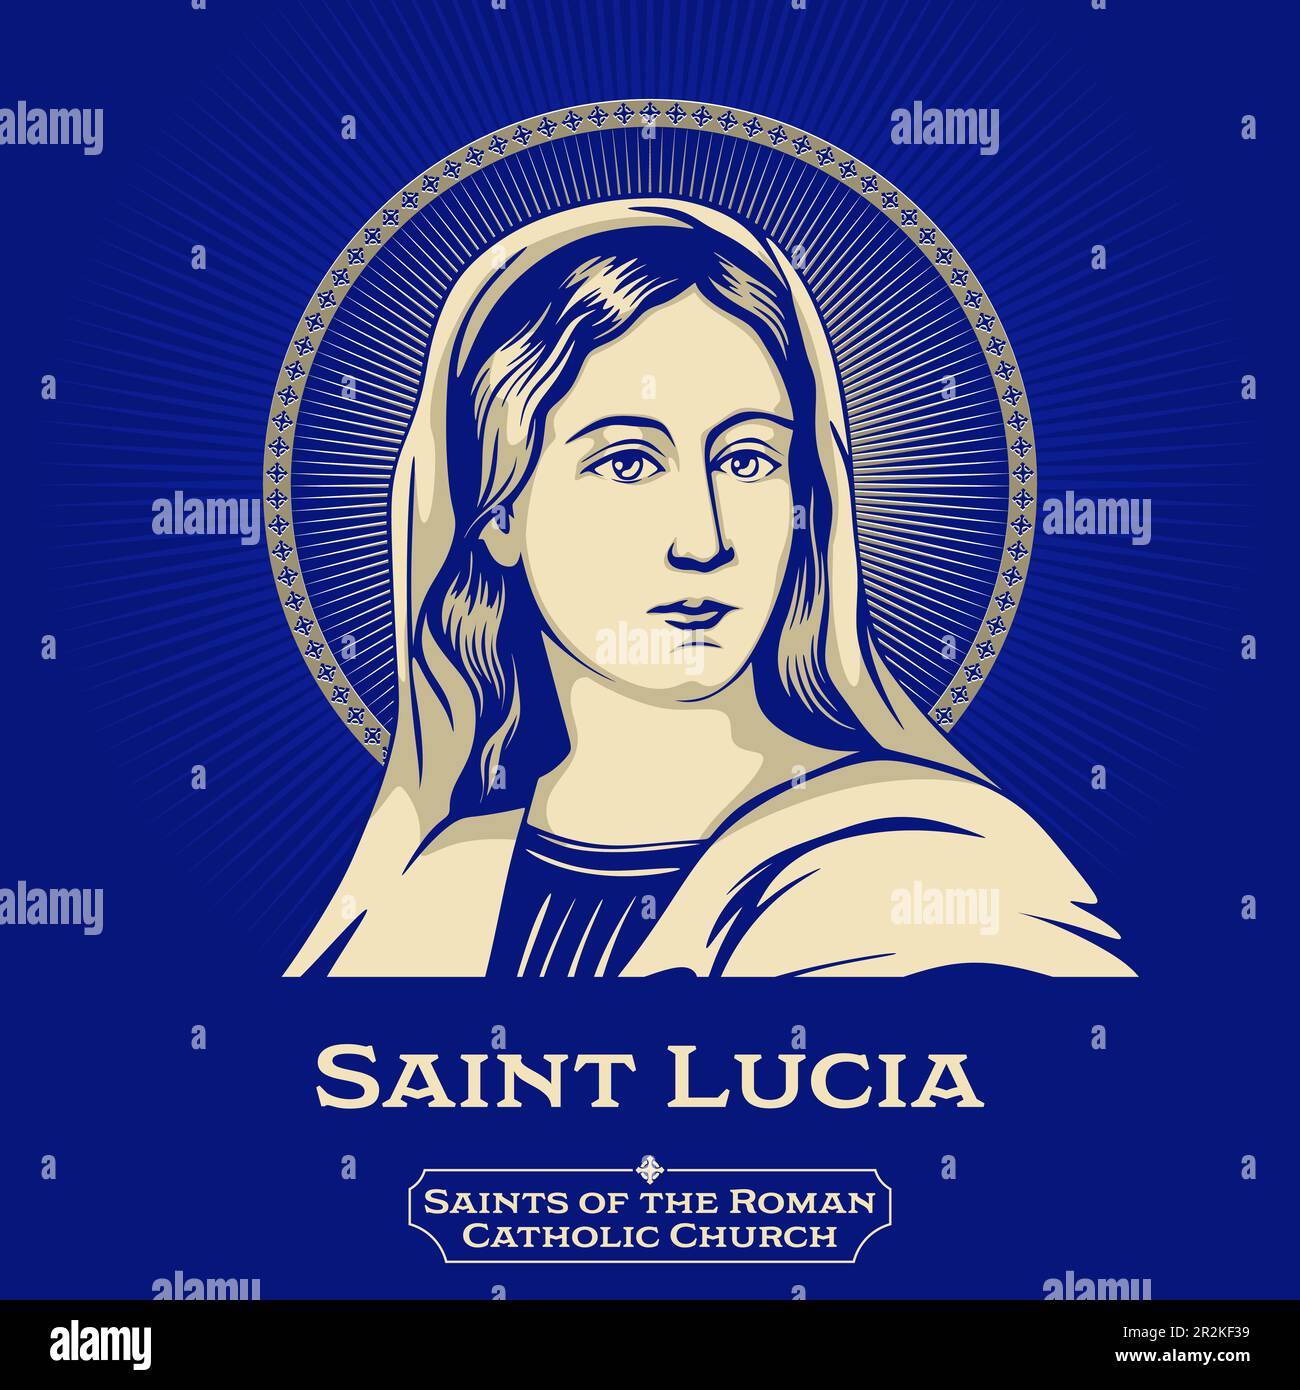 Santi cattolici. Santa Lucia (283-304) meglio conosciuta come Santa Lucia, fu un martire cristiano romano morto durante la persecuzione diocesana. Illustrazione Vettoriale